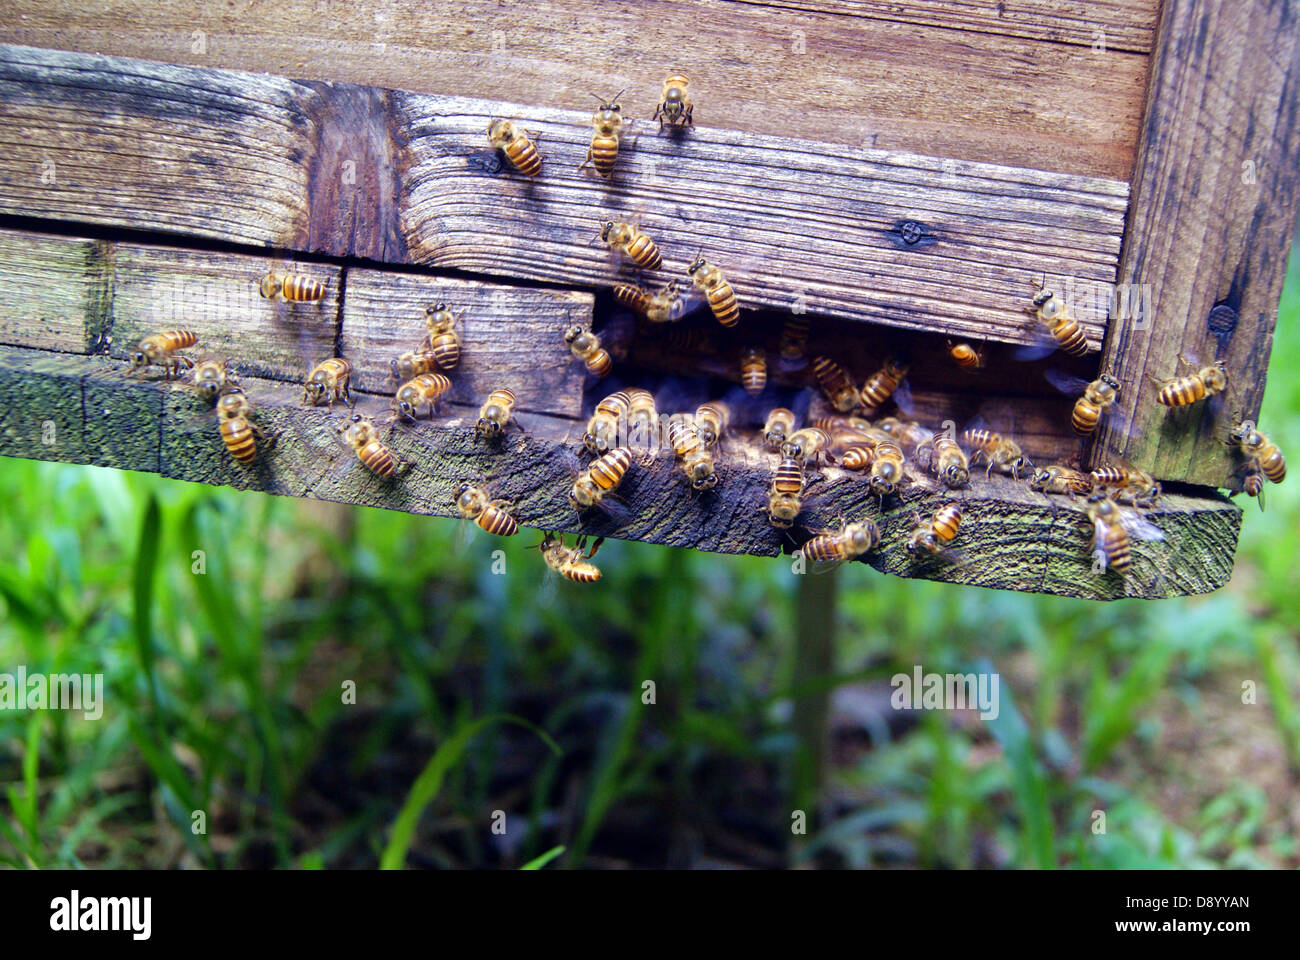 Le rucher, à Shenzhen, Chine. Les abeilles fabriquent le miel, le plus beau cadeau d'être humain. Banque D'Images